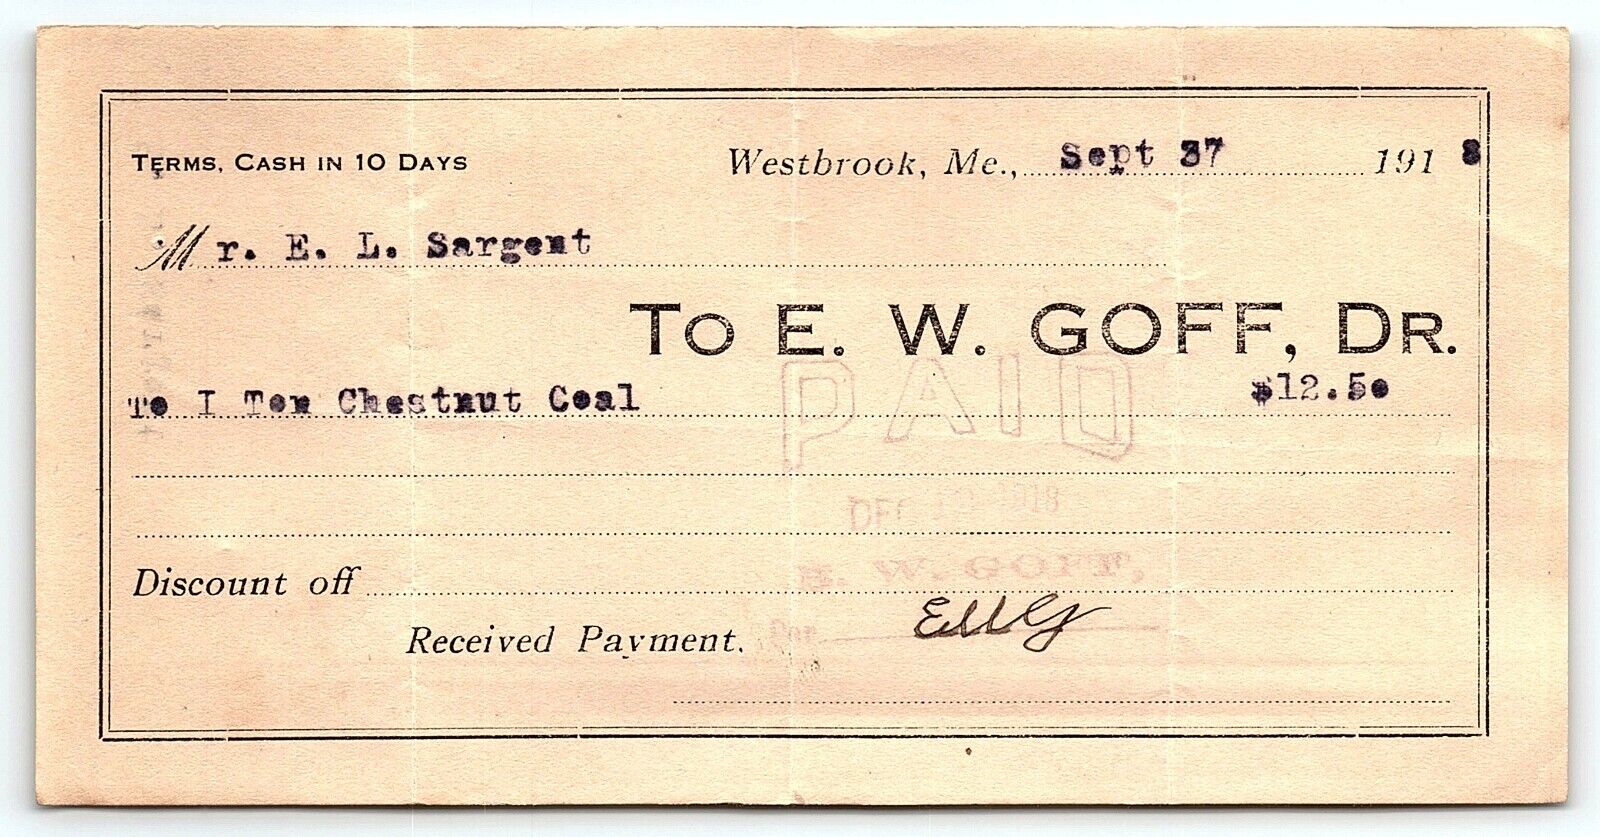 1913 WESTBROOK MAINE 1 TON CHESTNUT COAL E.W.  GOFF TO E.L SARGENT RECEIPT Z1172